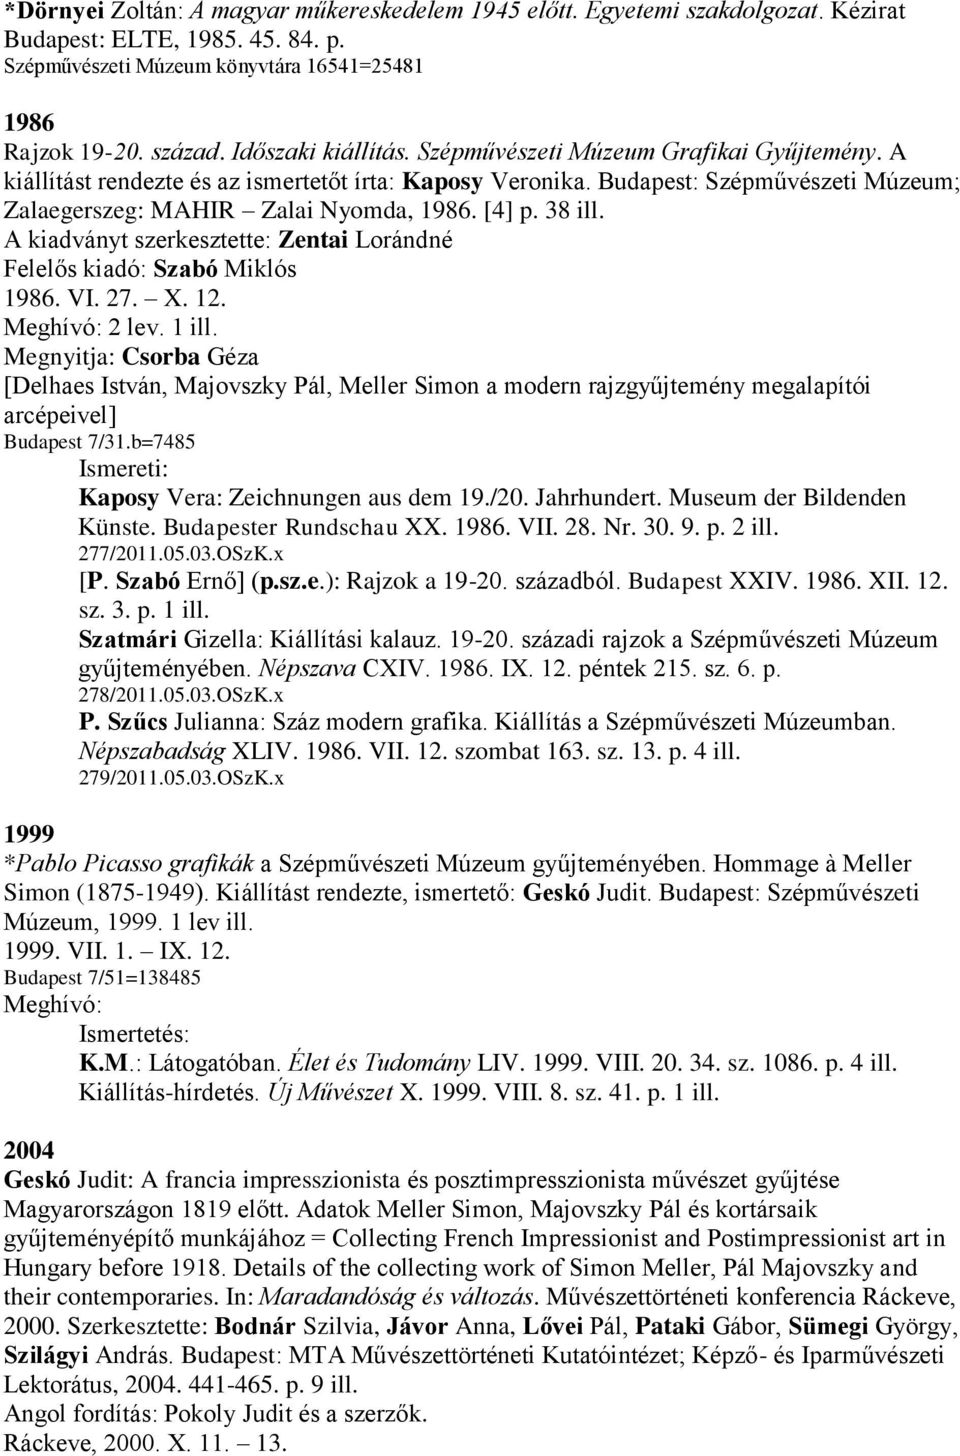 [4] p. 38 ill. A kiadványt szerkesztette: Zentai Lorándné Felelős kiadó: Szabó Miklós 1986. VI. 27. X. 12. Meghívó: 2 lev. 1 ill.